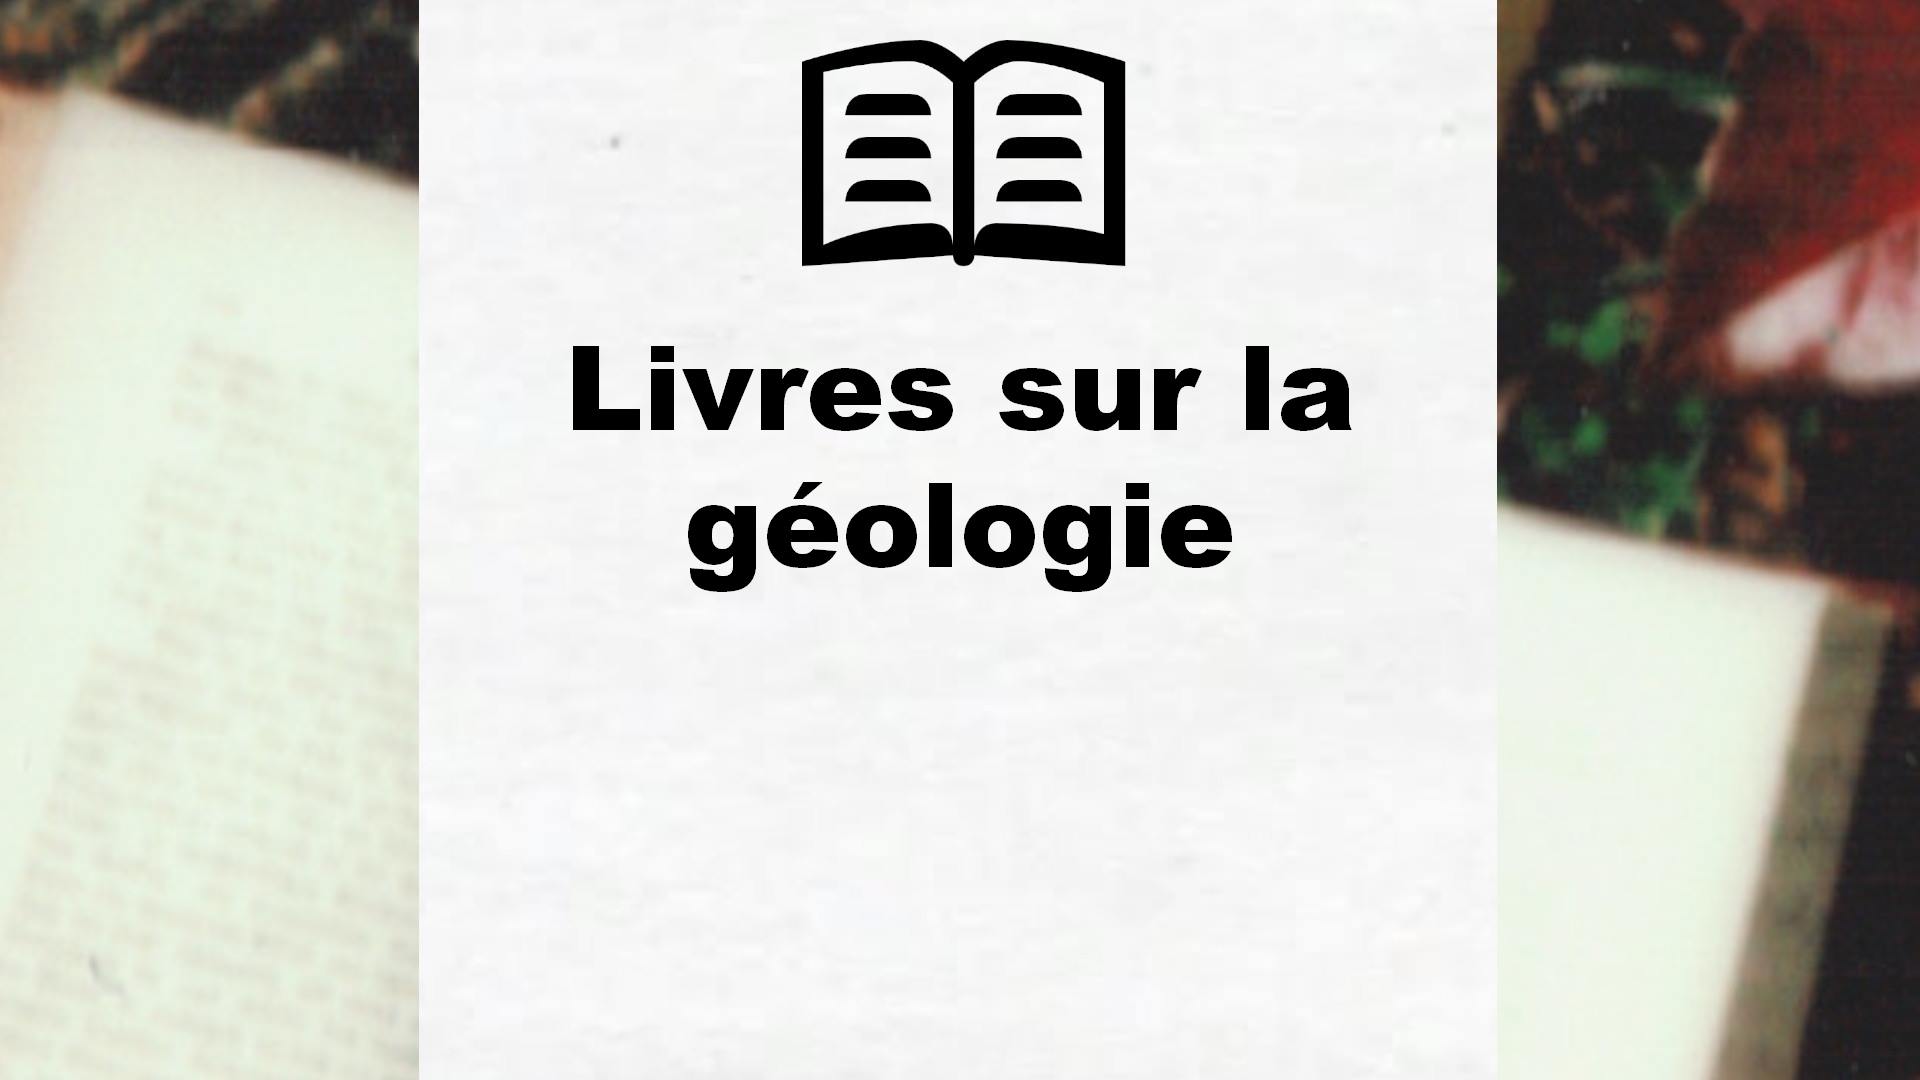 Livres sur la géologie